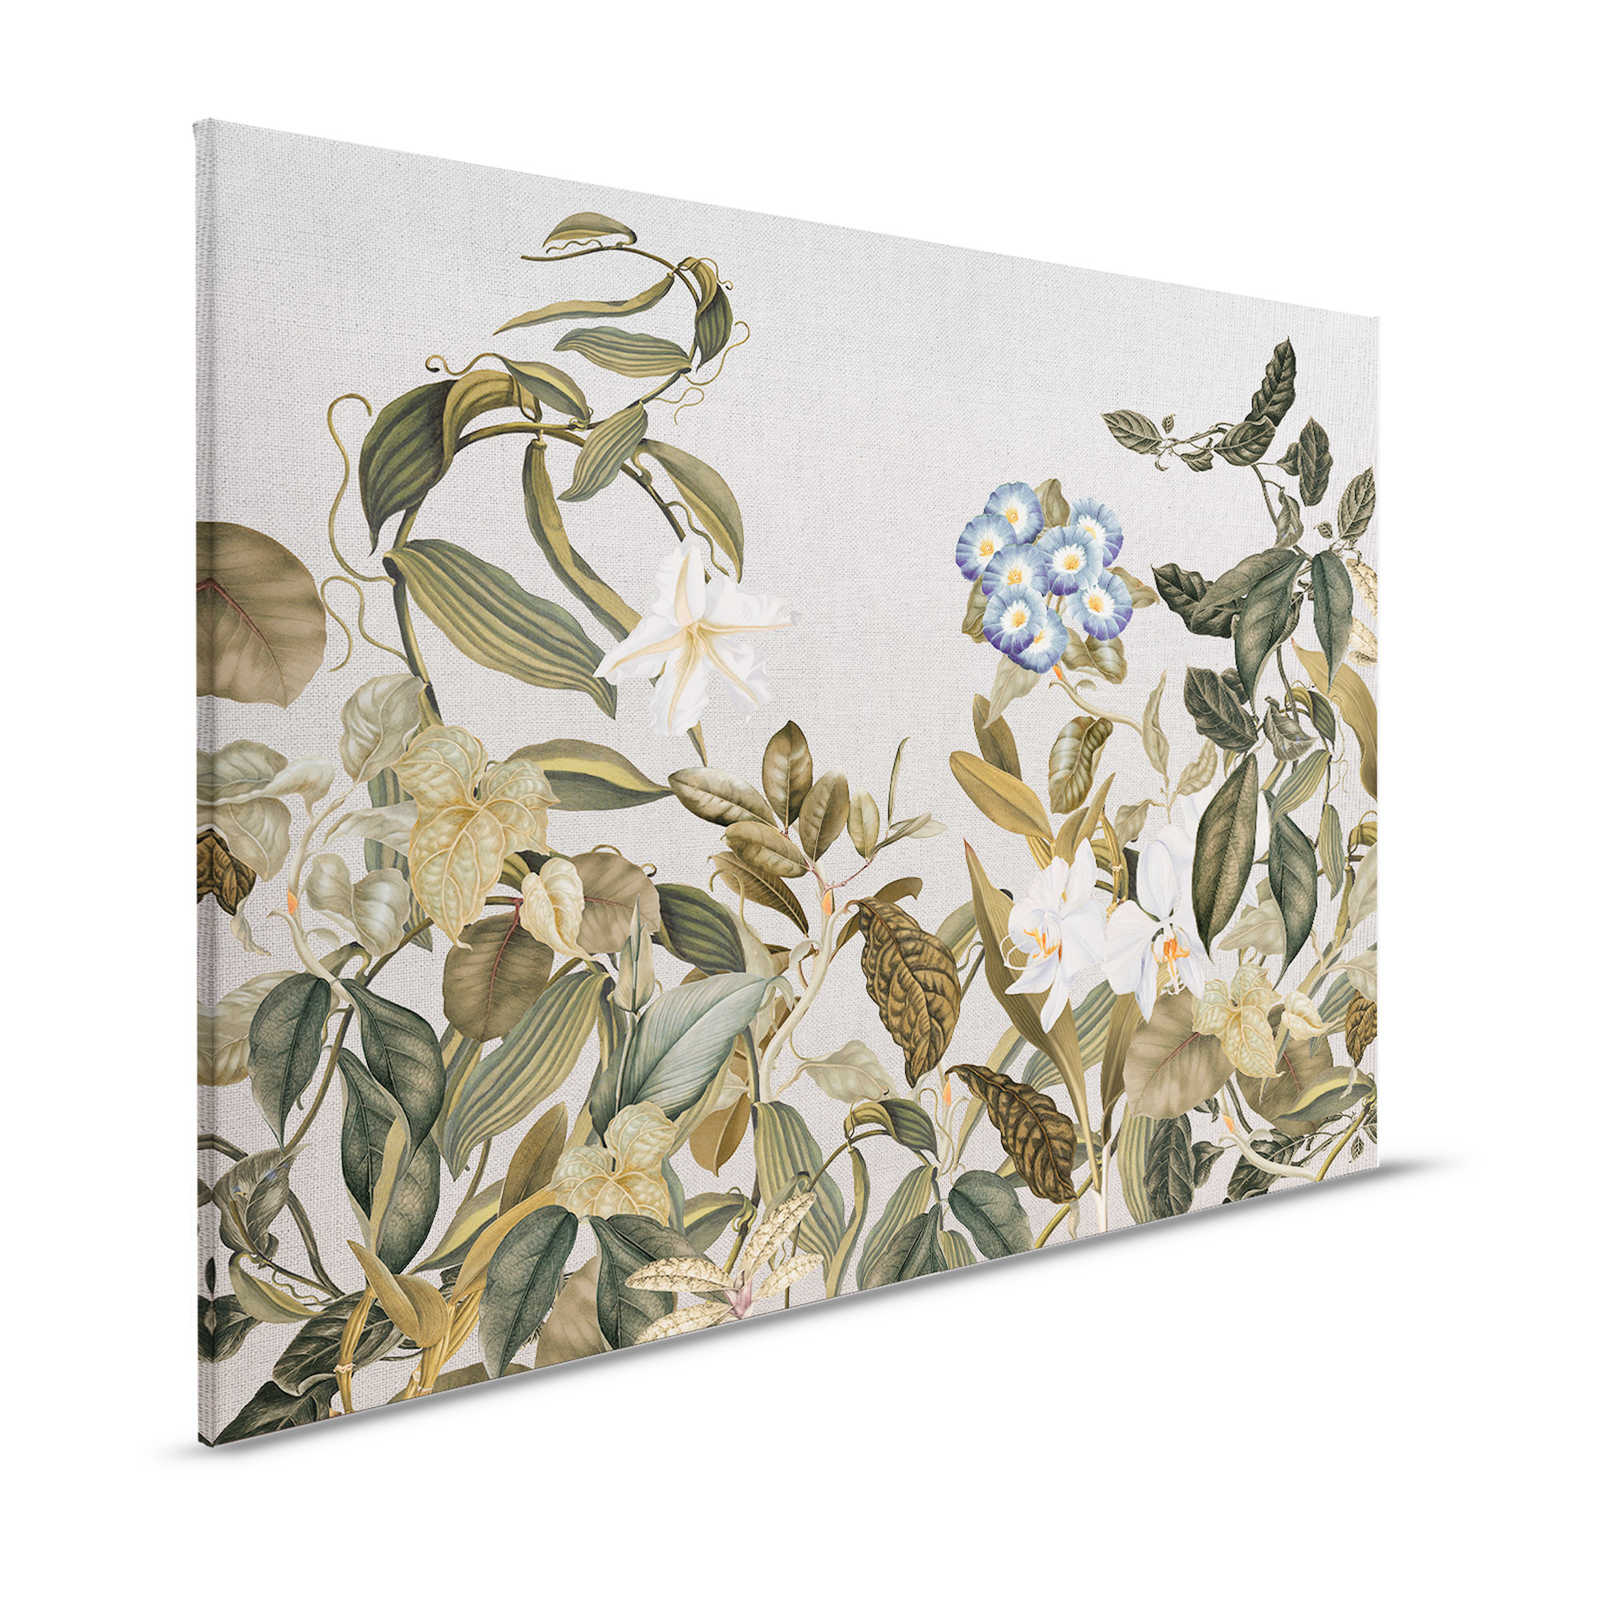 Tableau toile style botanique fleurs, feuilles & look textile - 1,20 m x 0,80 m
